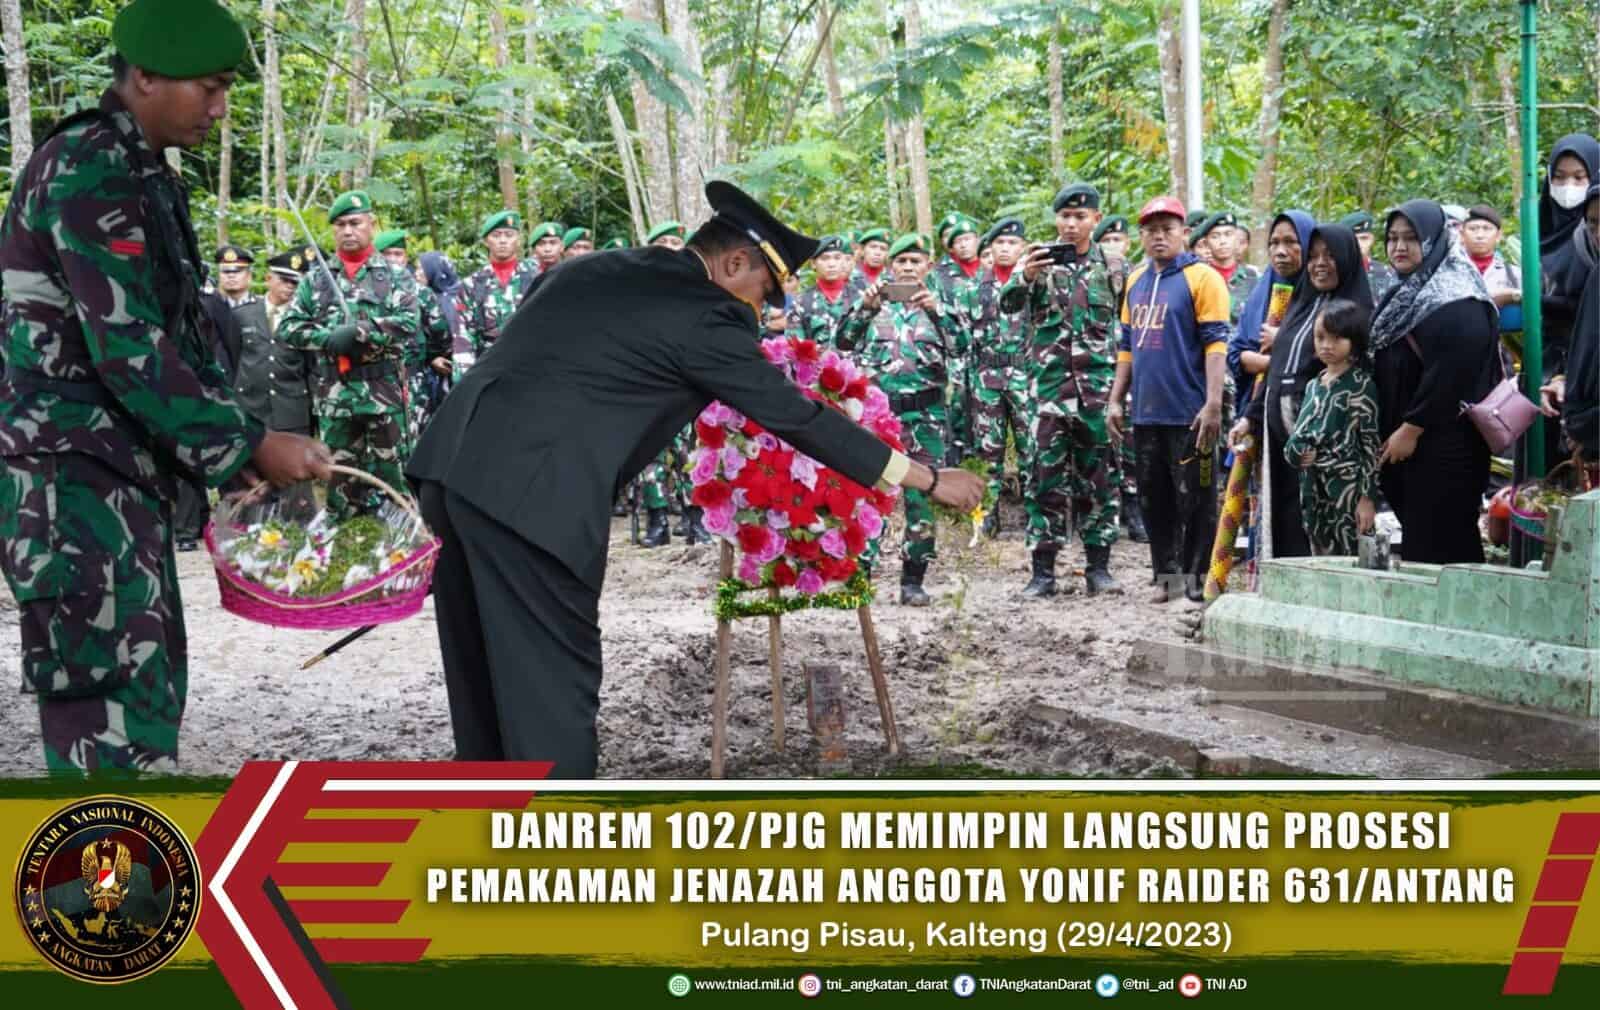 Danrem 102/Pjg Brigjen TNI Bayu Permana Memimpin Langsung Prosesi Pemakaman Jenazah Anggota Yonif Raider 631/Antang